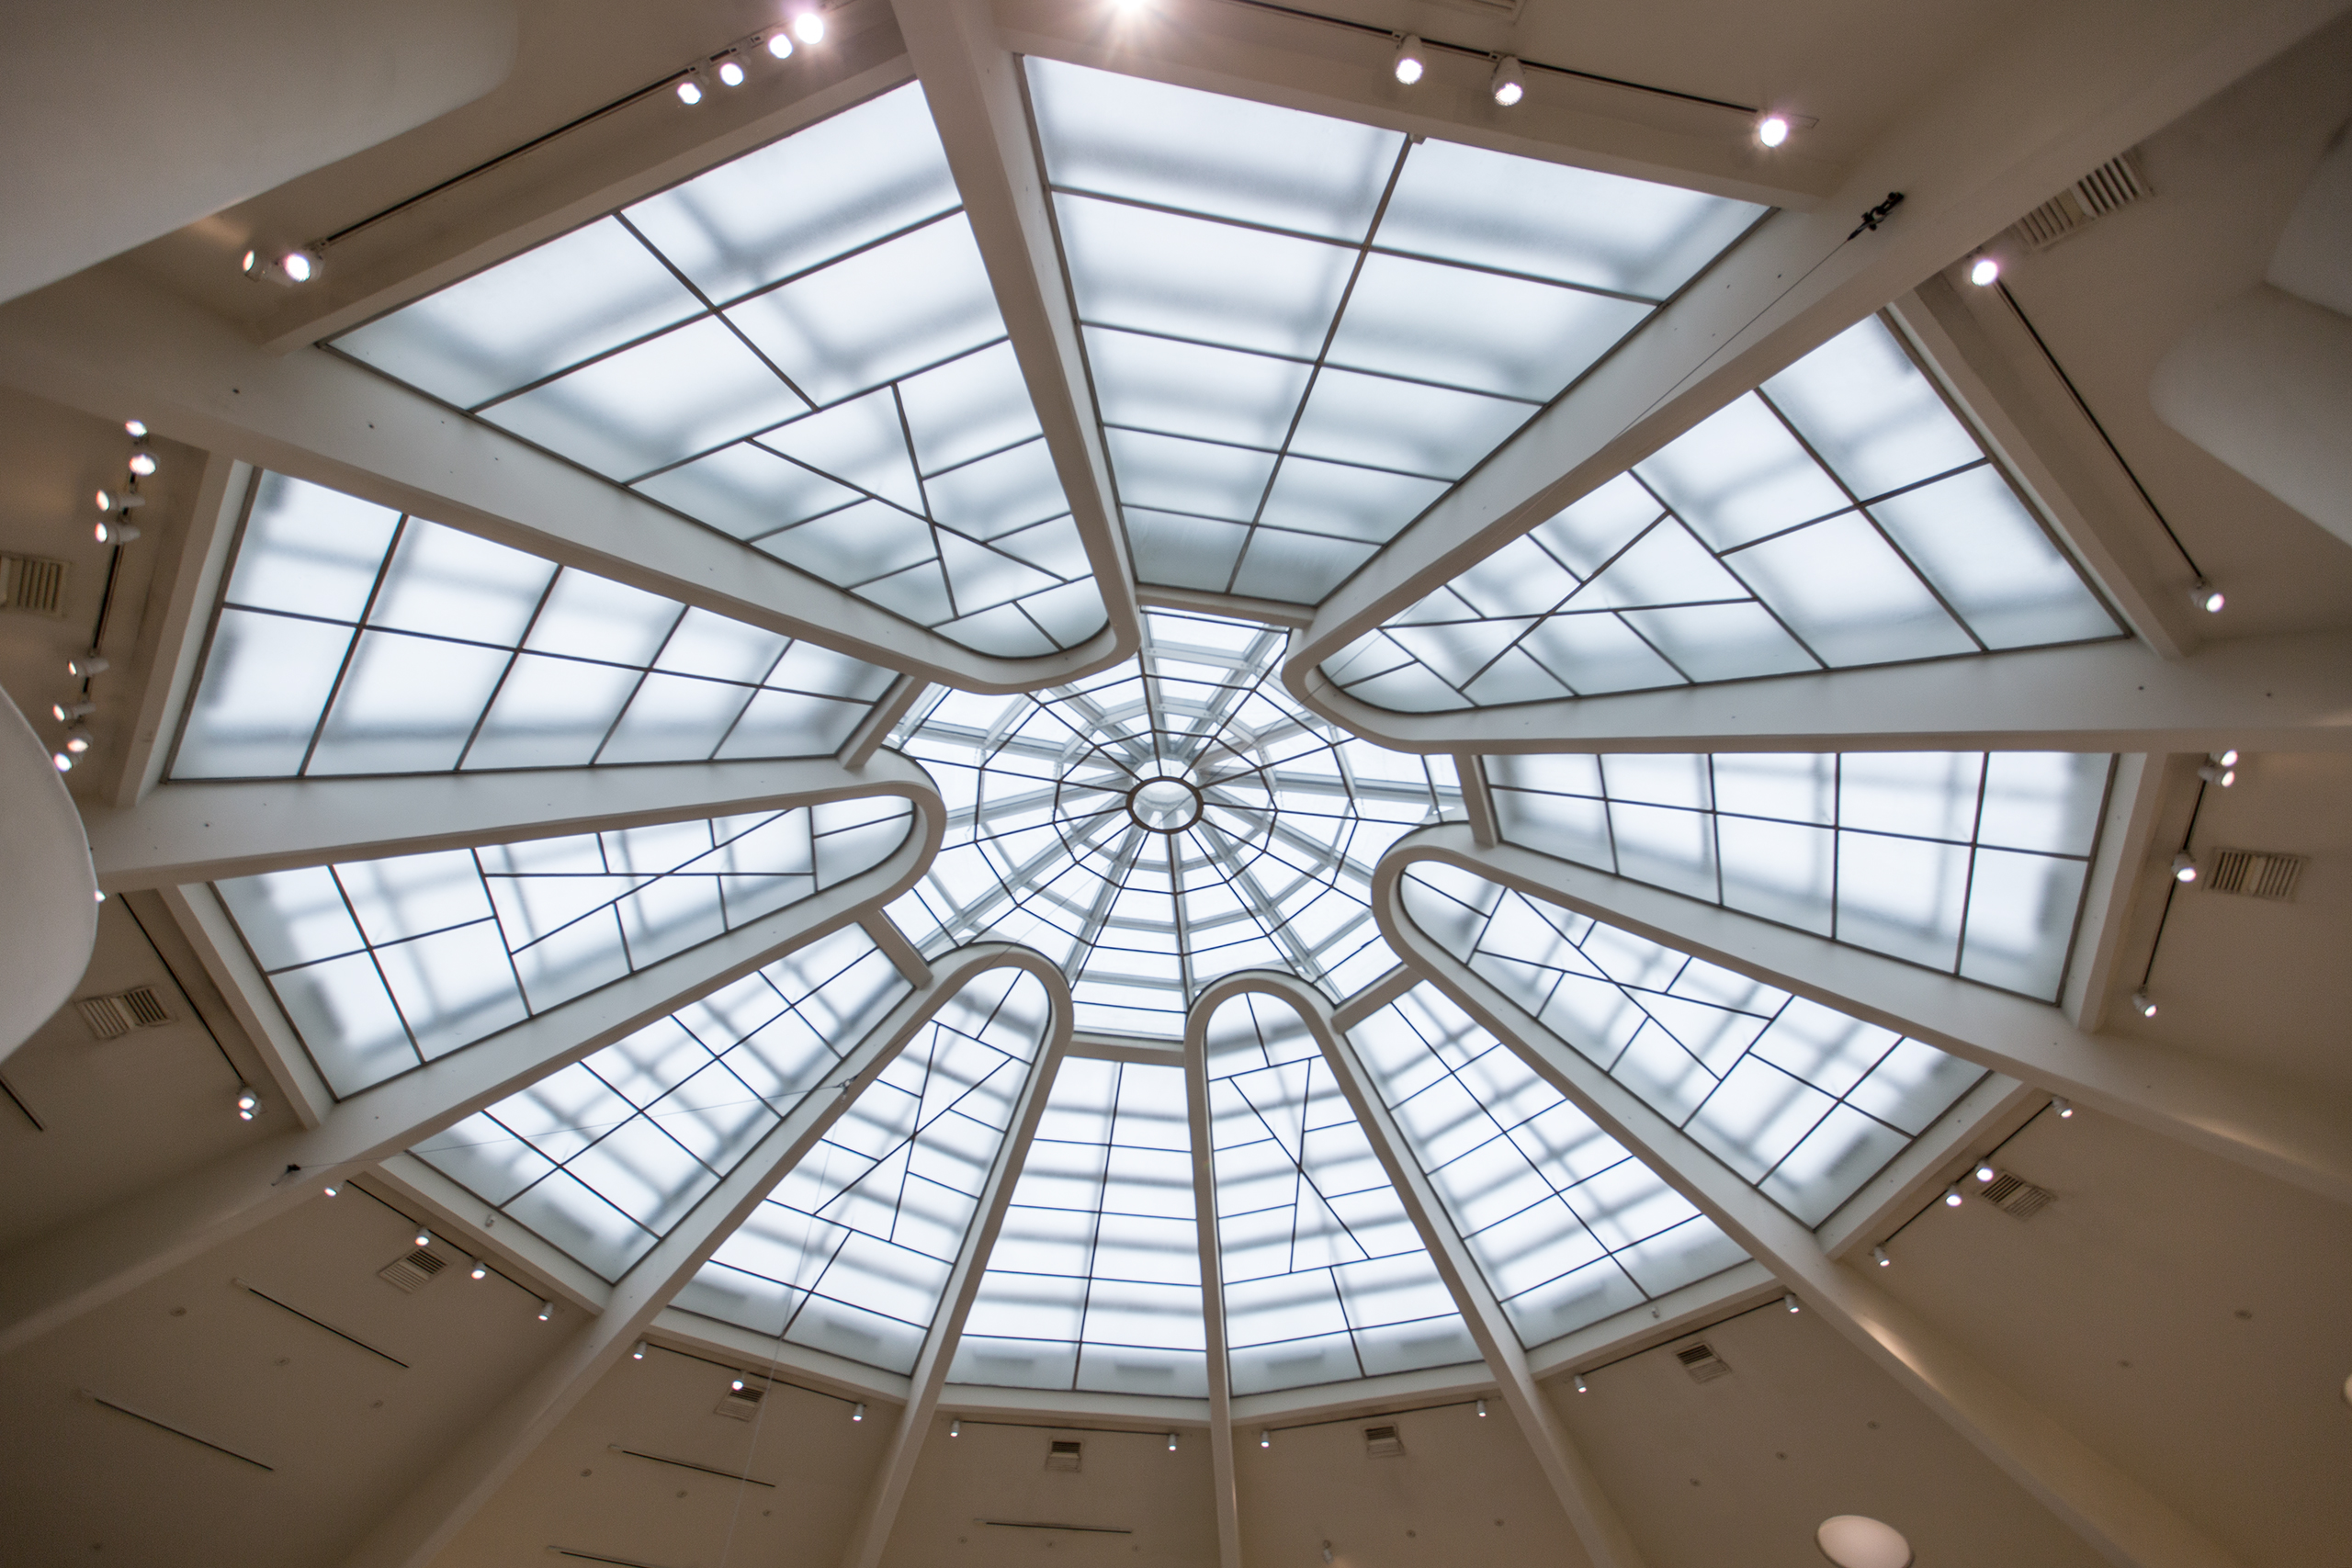 Image of guggenheim inteior skylight